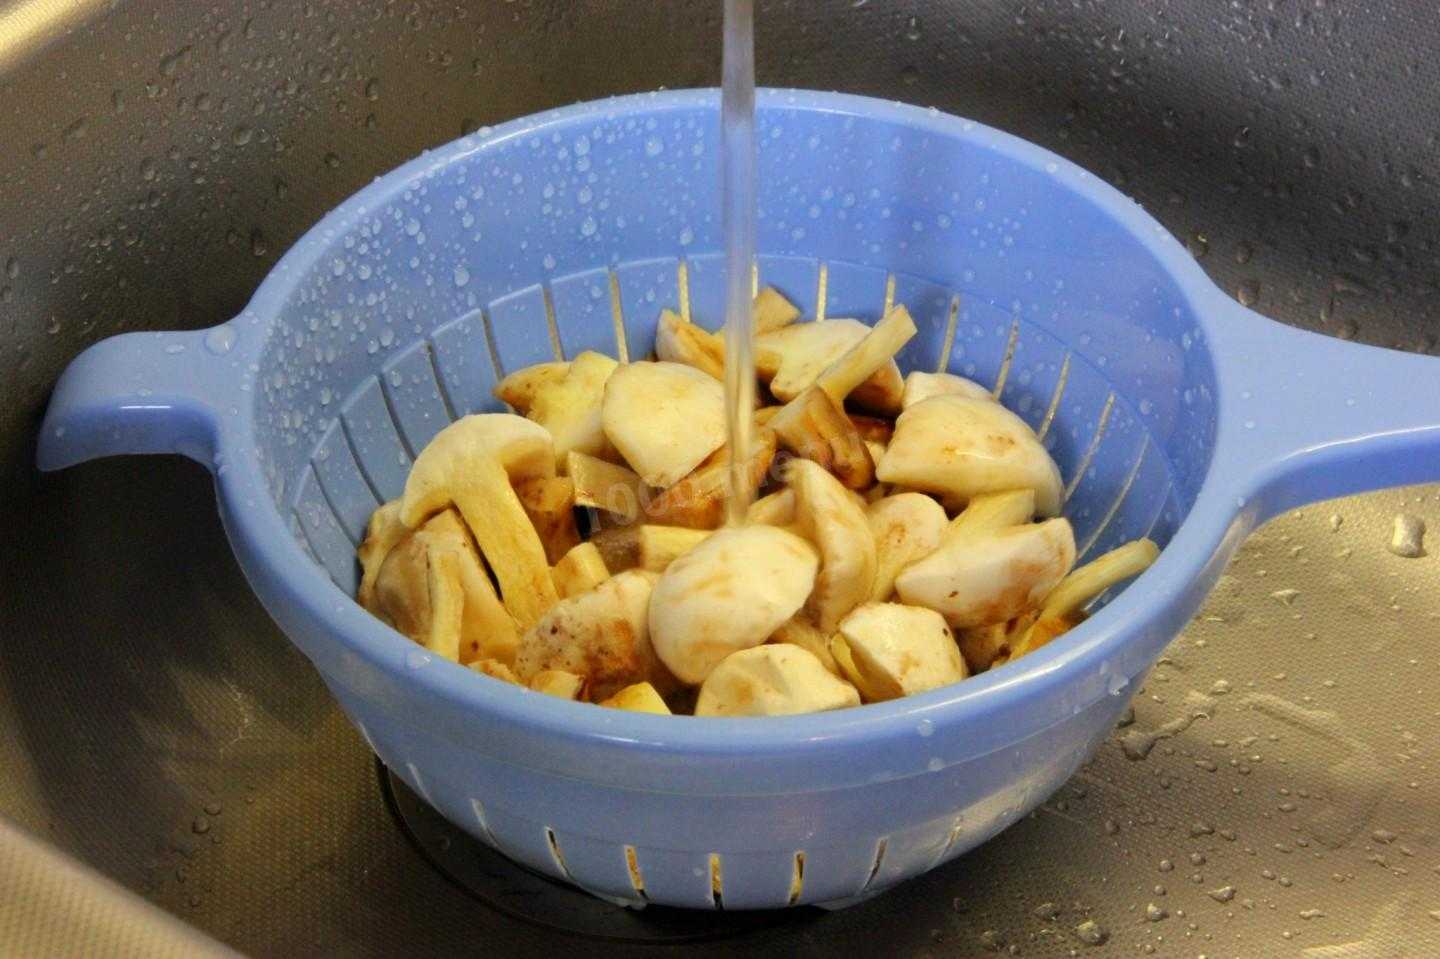 Жареные грибы маслята: лучшие рецепты с луком, картошкой, сметаной, сыром, без варки, на зиму. на каком масле жарить маслята? как и сколько варить грибы маслята перед жаркой по времени?